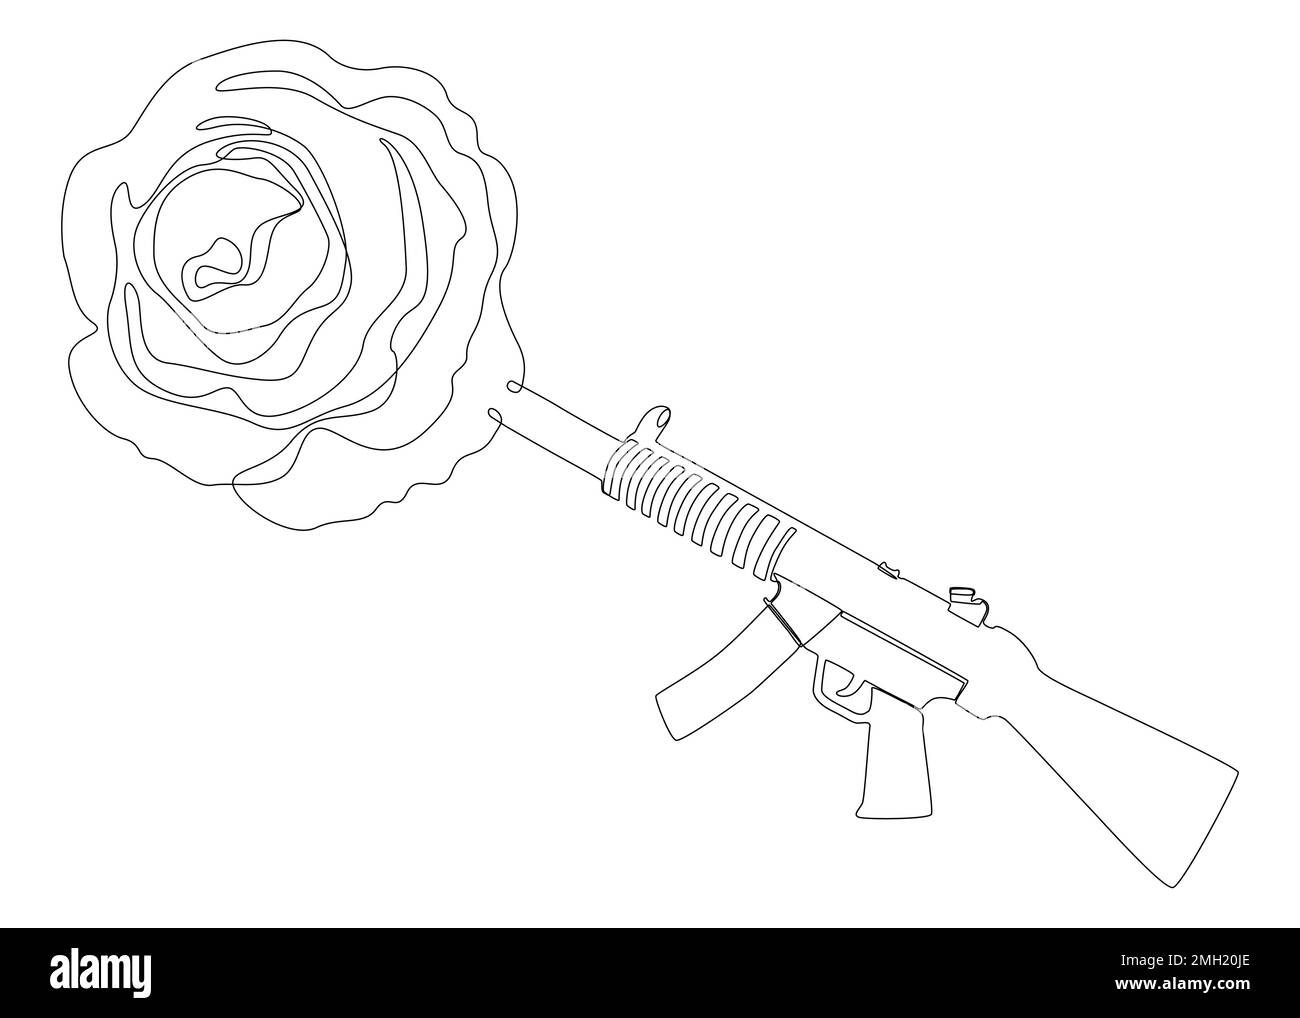 Eine durchgehende Linie einer Maschinenpistole mit Rose. Vektorkonzept zur Darstellung dünner Linien. Kontur Zeichnen kreativer Ideen. Stock Vektor